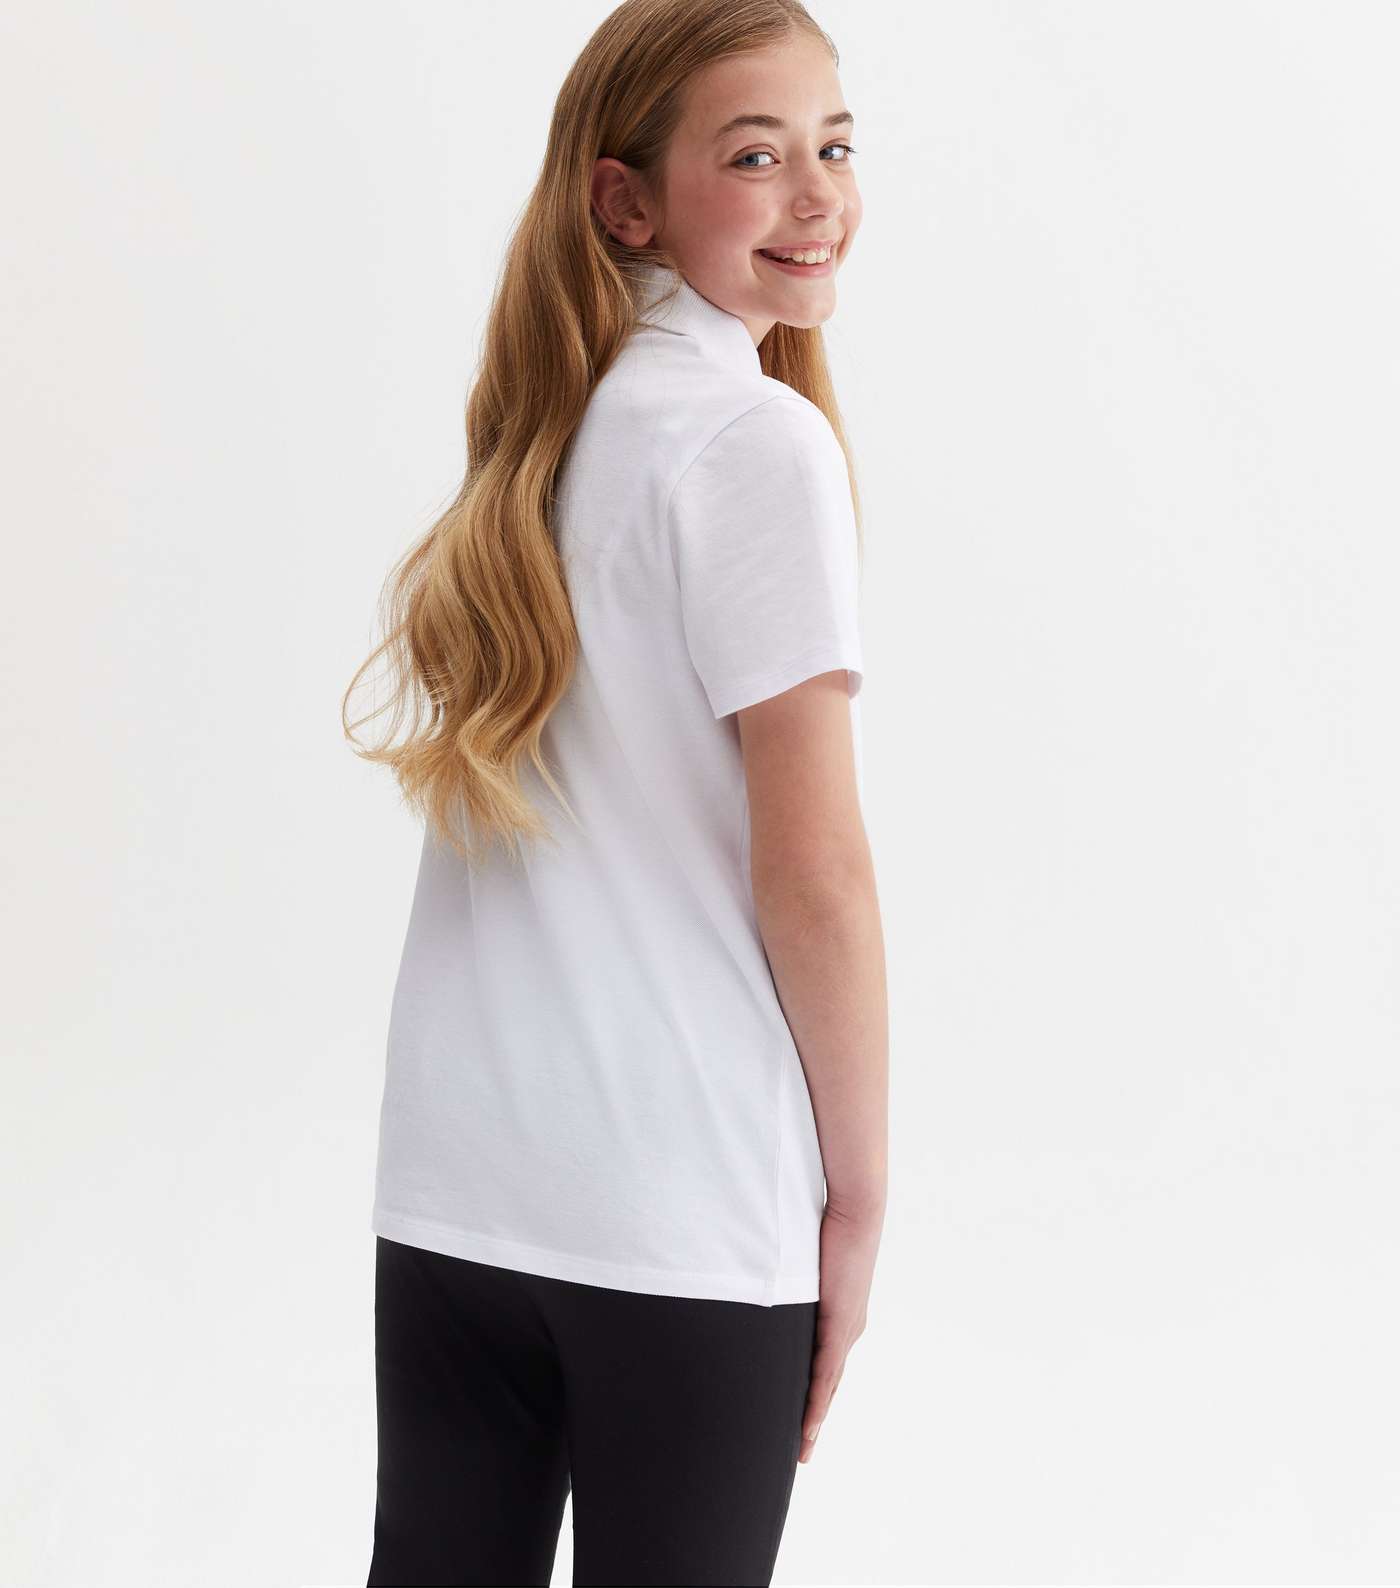 Girls 2 Pack White Unisex Short Sleeve School Polo Shirts Image 4